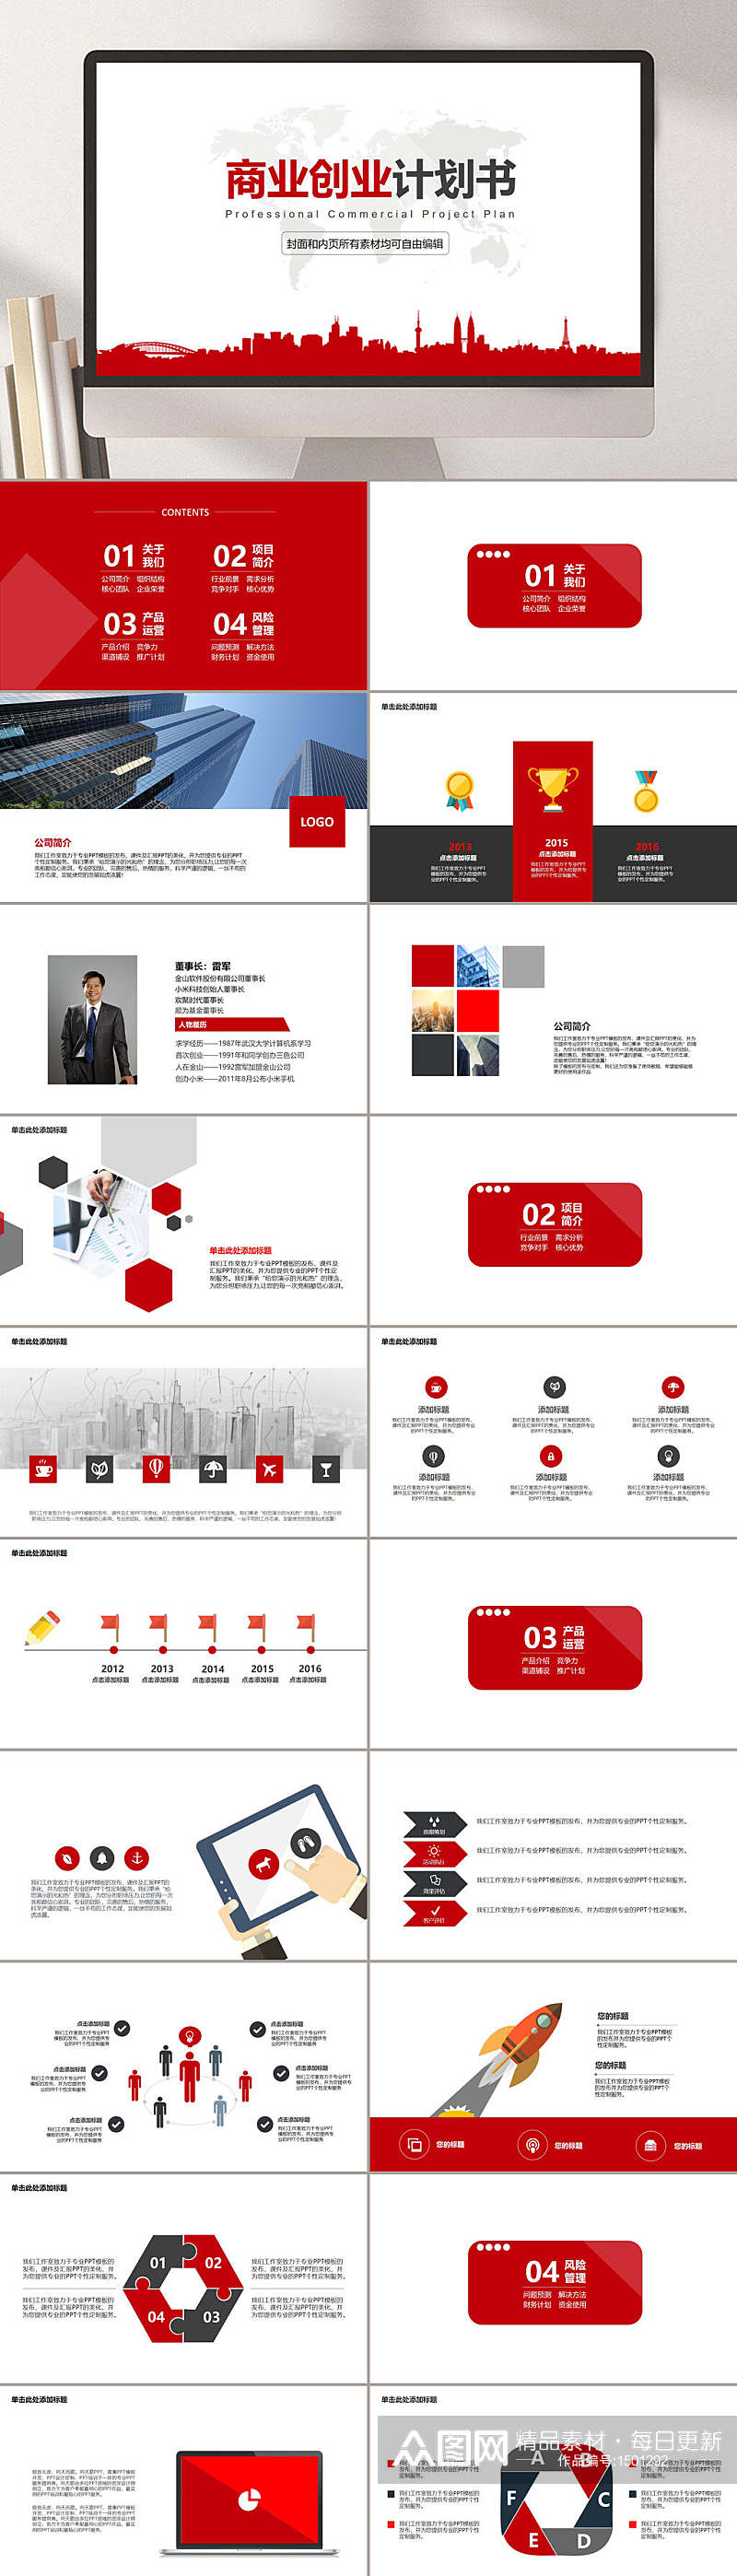 商业项目营销报告红色主题PPT模板素材